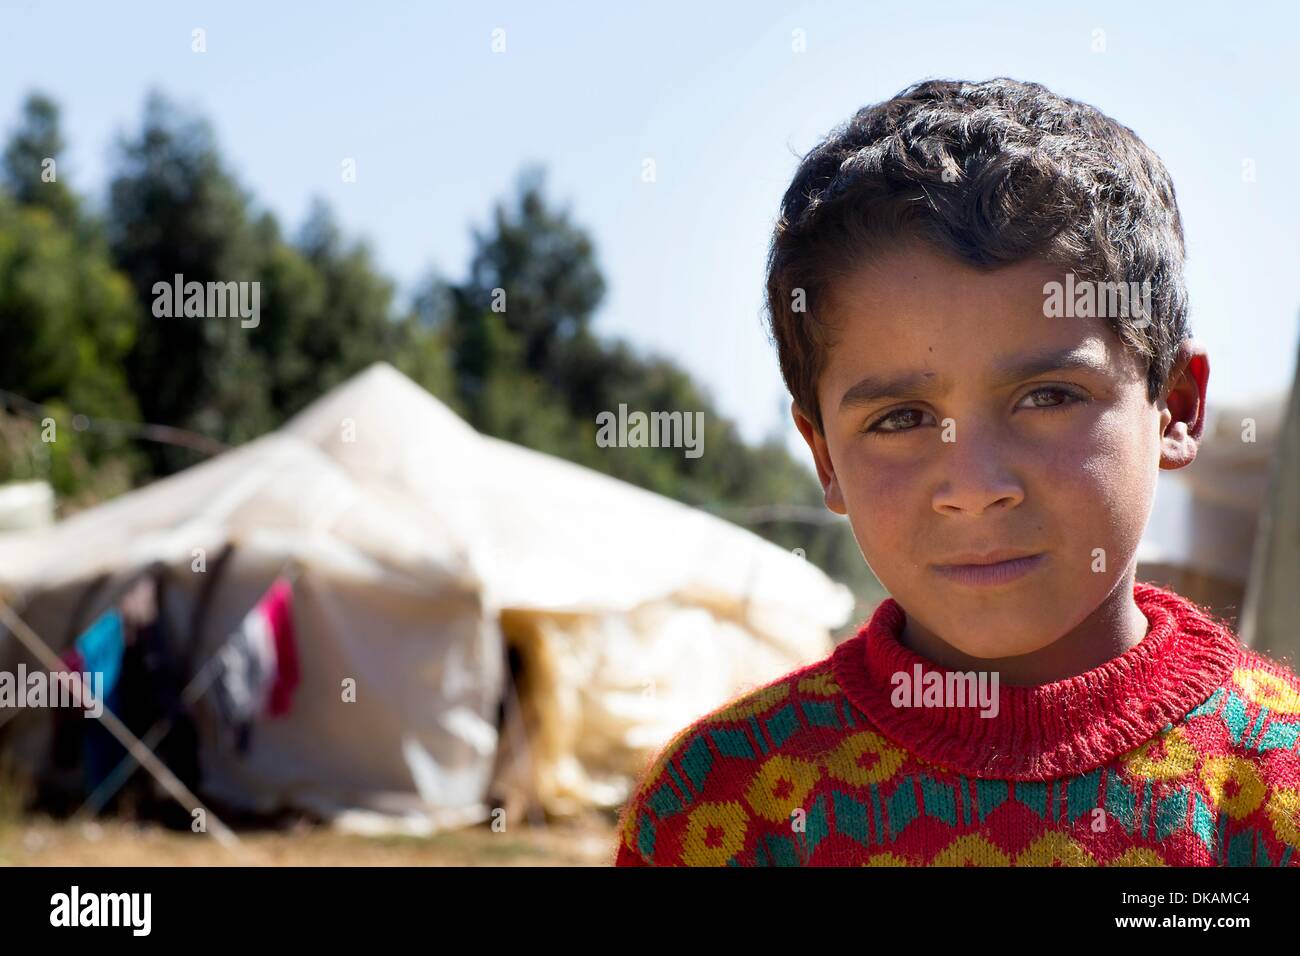 Ogni giorno nuove famiglie provengono per il livello di beeka in Libano, fuggono dalla guerra e dalla distruzione nella vicina Siria. Tra di loro ci sono sempre molti bambini e giovani. Diverse organizzazioni cercano di offrire ai rifugiati una casa temporanea. La Caritas ha distribuito in Foto Stock